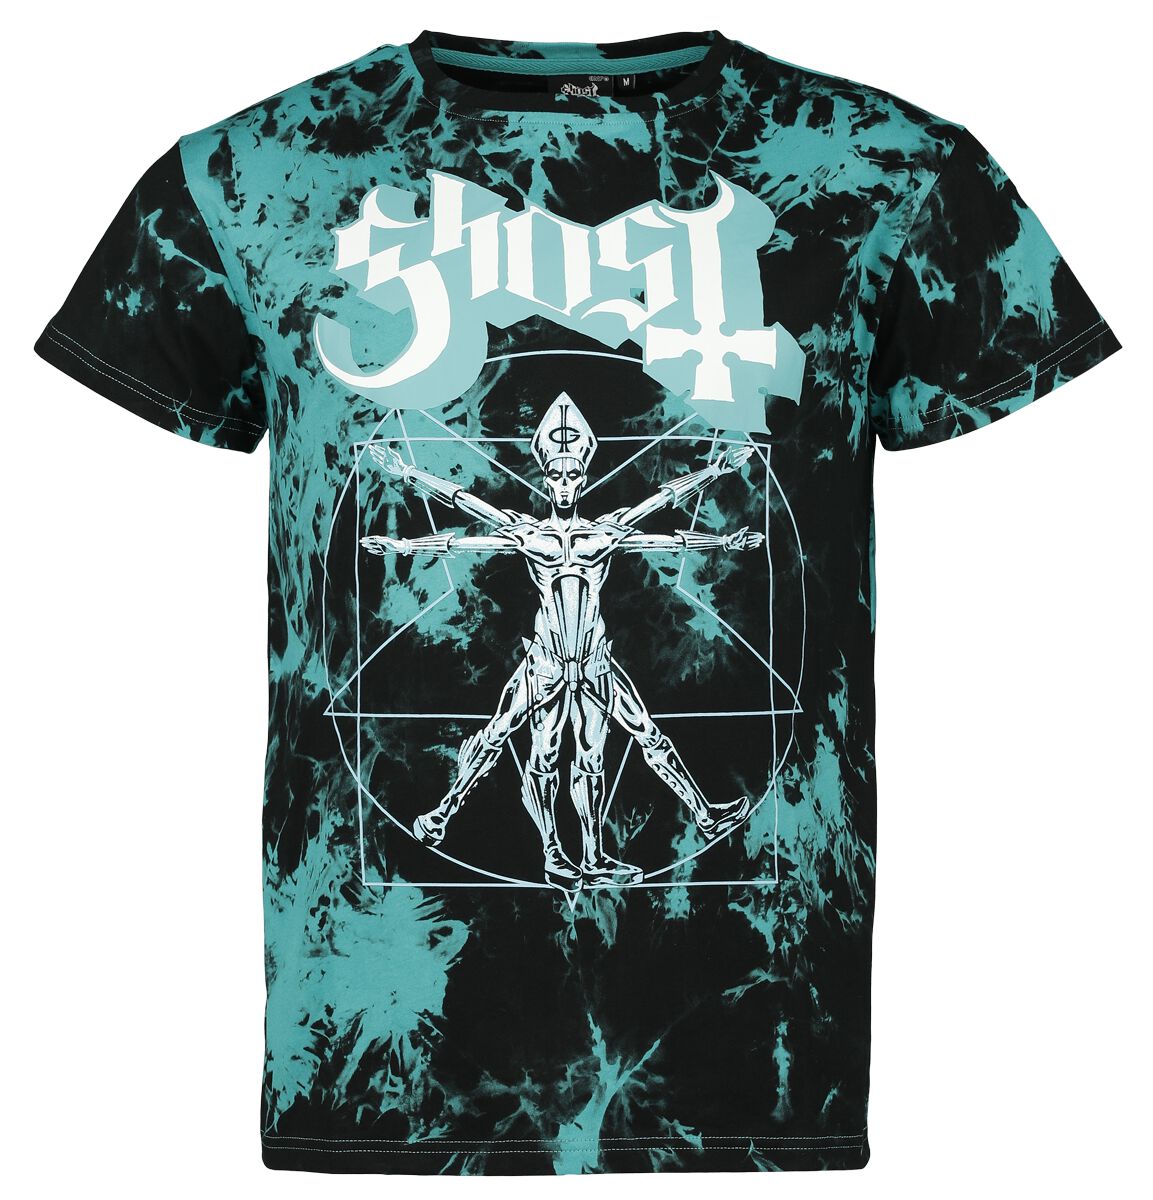 Ghost T-Shirt - EMP Signature Collection - S bis 3XL - für Männer - Größe L - schwarz/türkis  - EMP exklusives Merchandise!